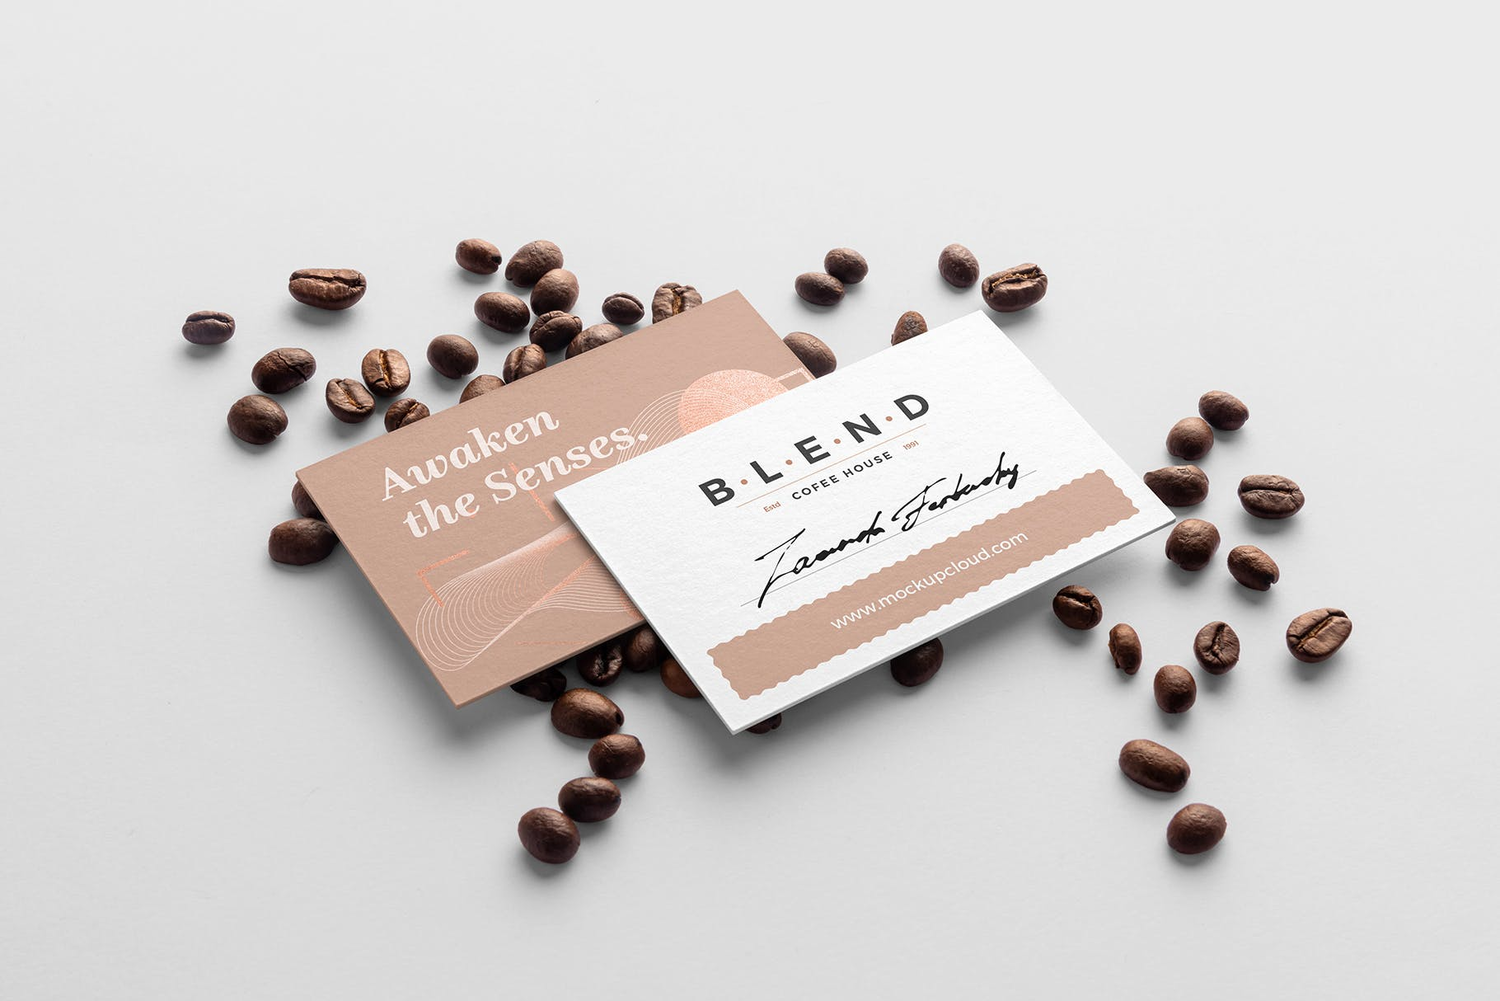 4738 11款咖啡品牌包装袋纸杯VI设计PS样机 Blend – Coffeehouse Branding Mockup Vol. 2@GOOODME.COM